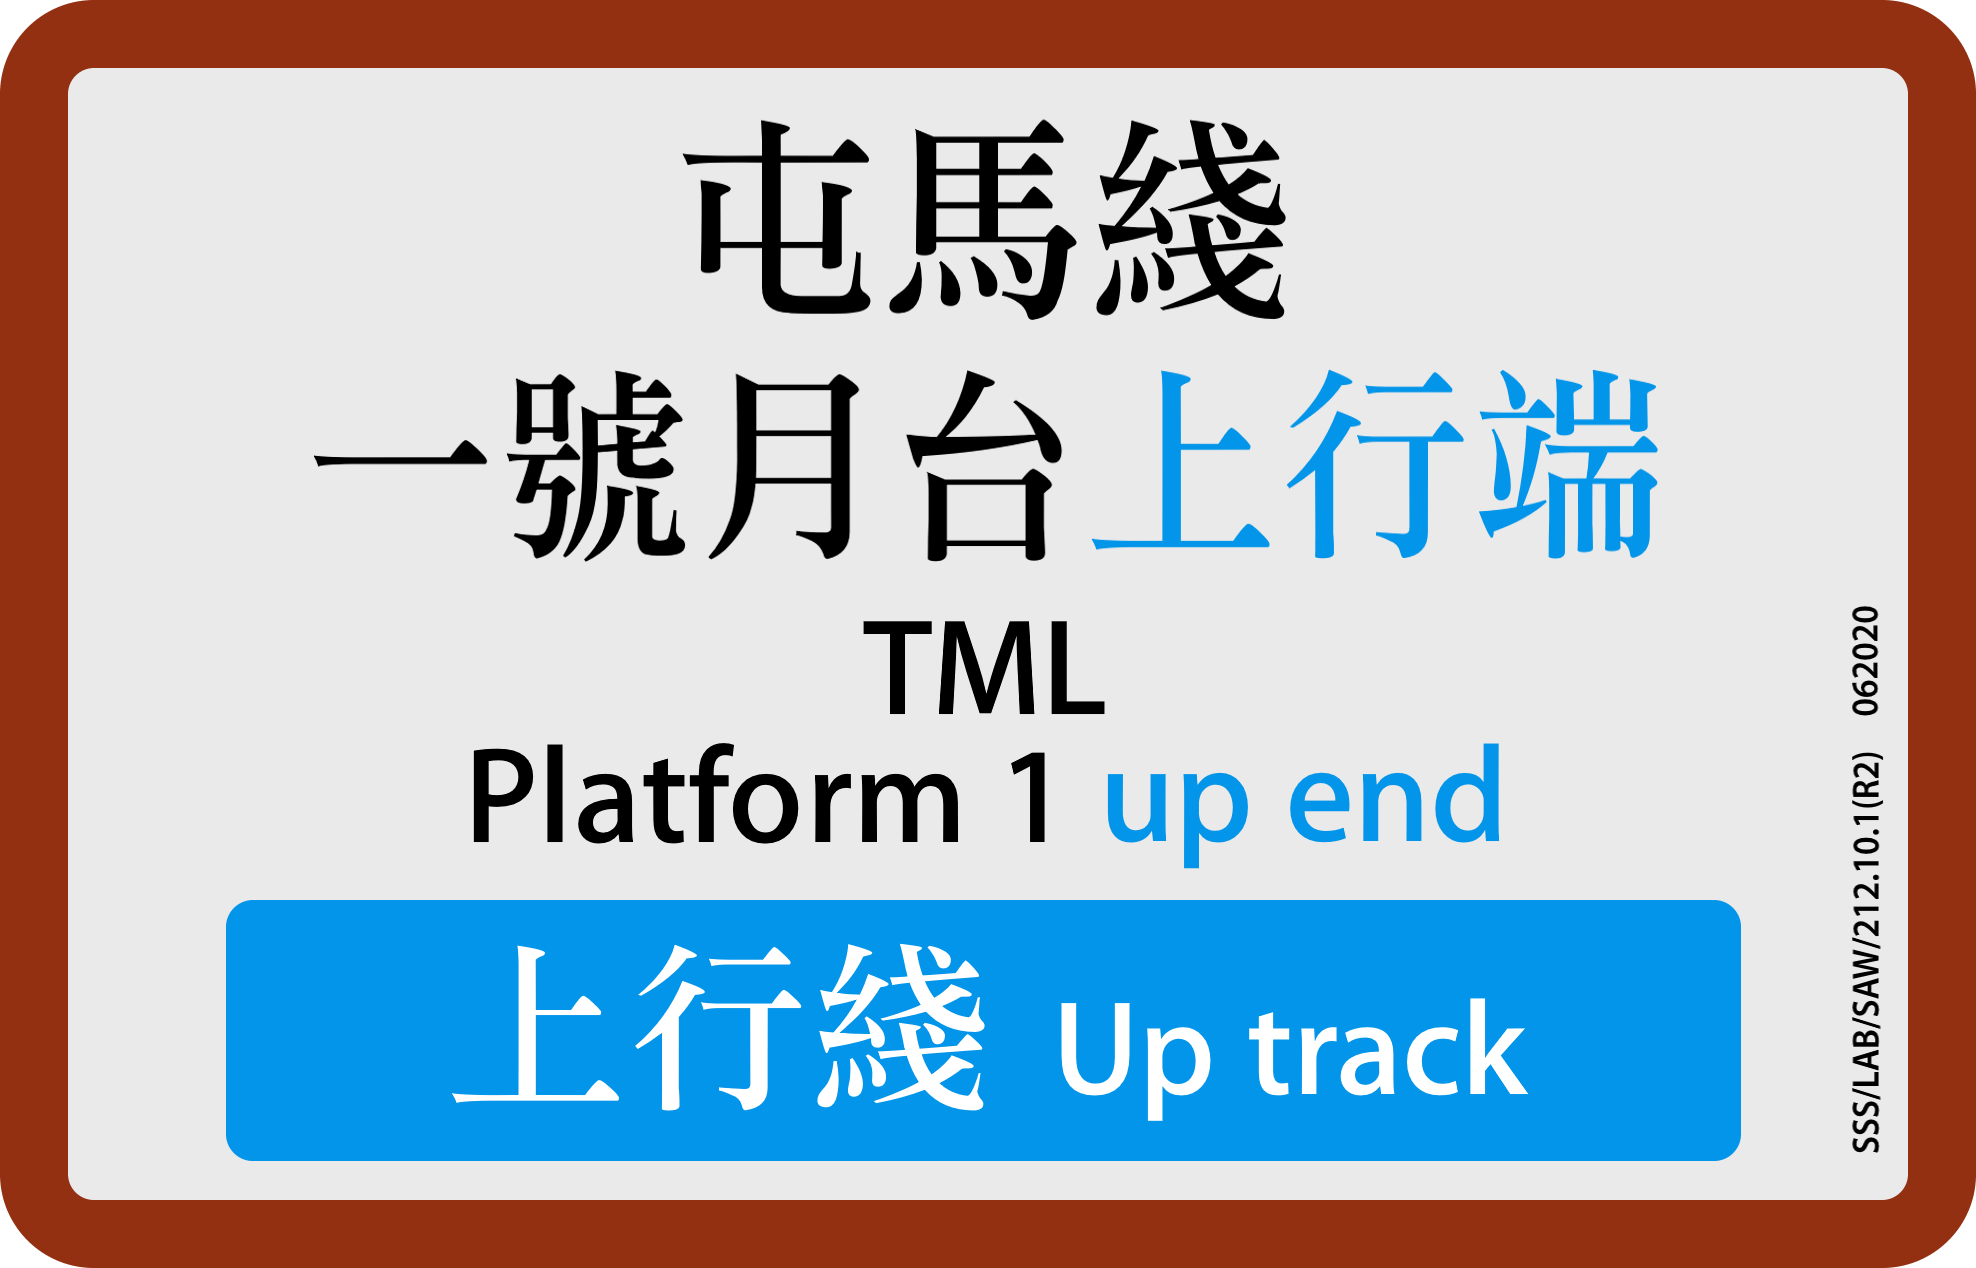 MTR Platform Screen Doors sticker: TML Platform 1 up end